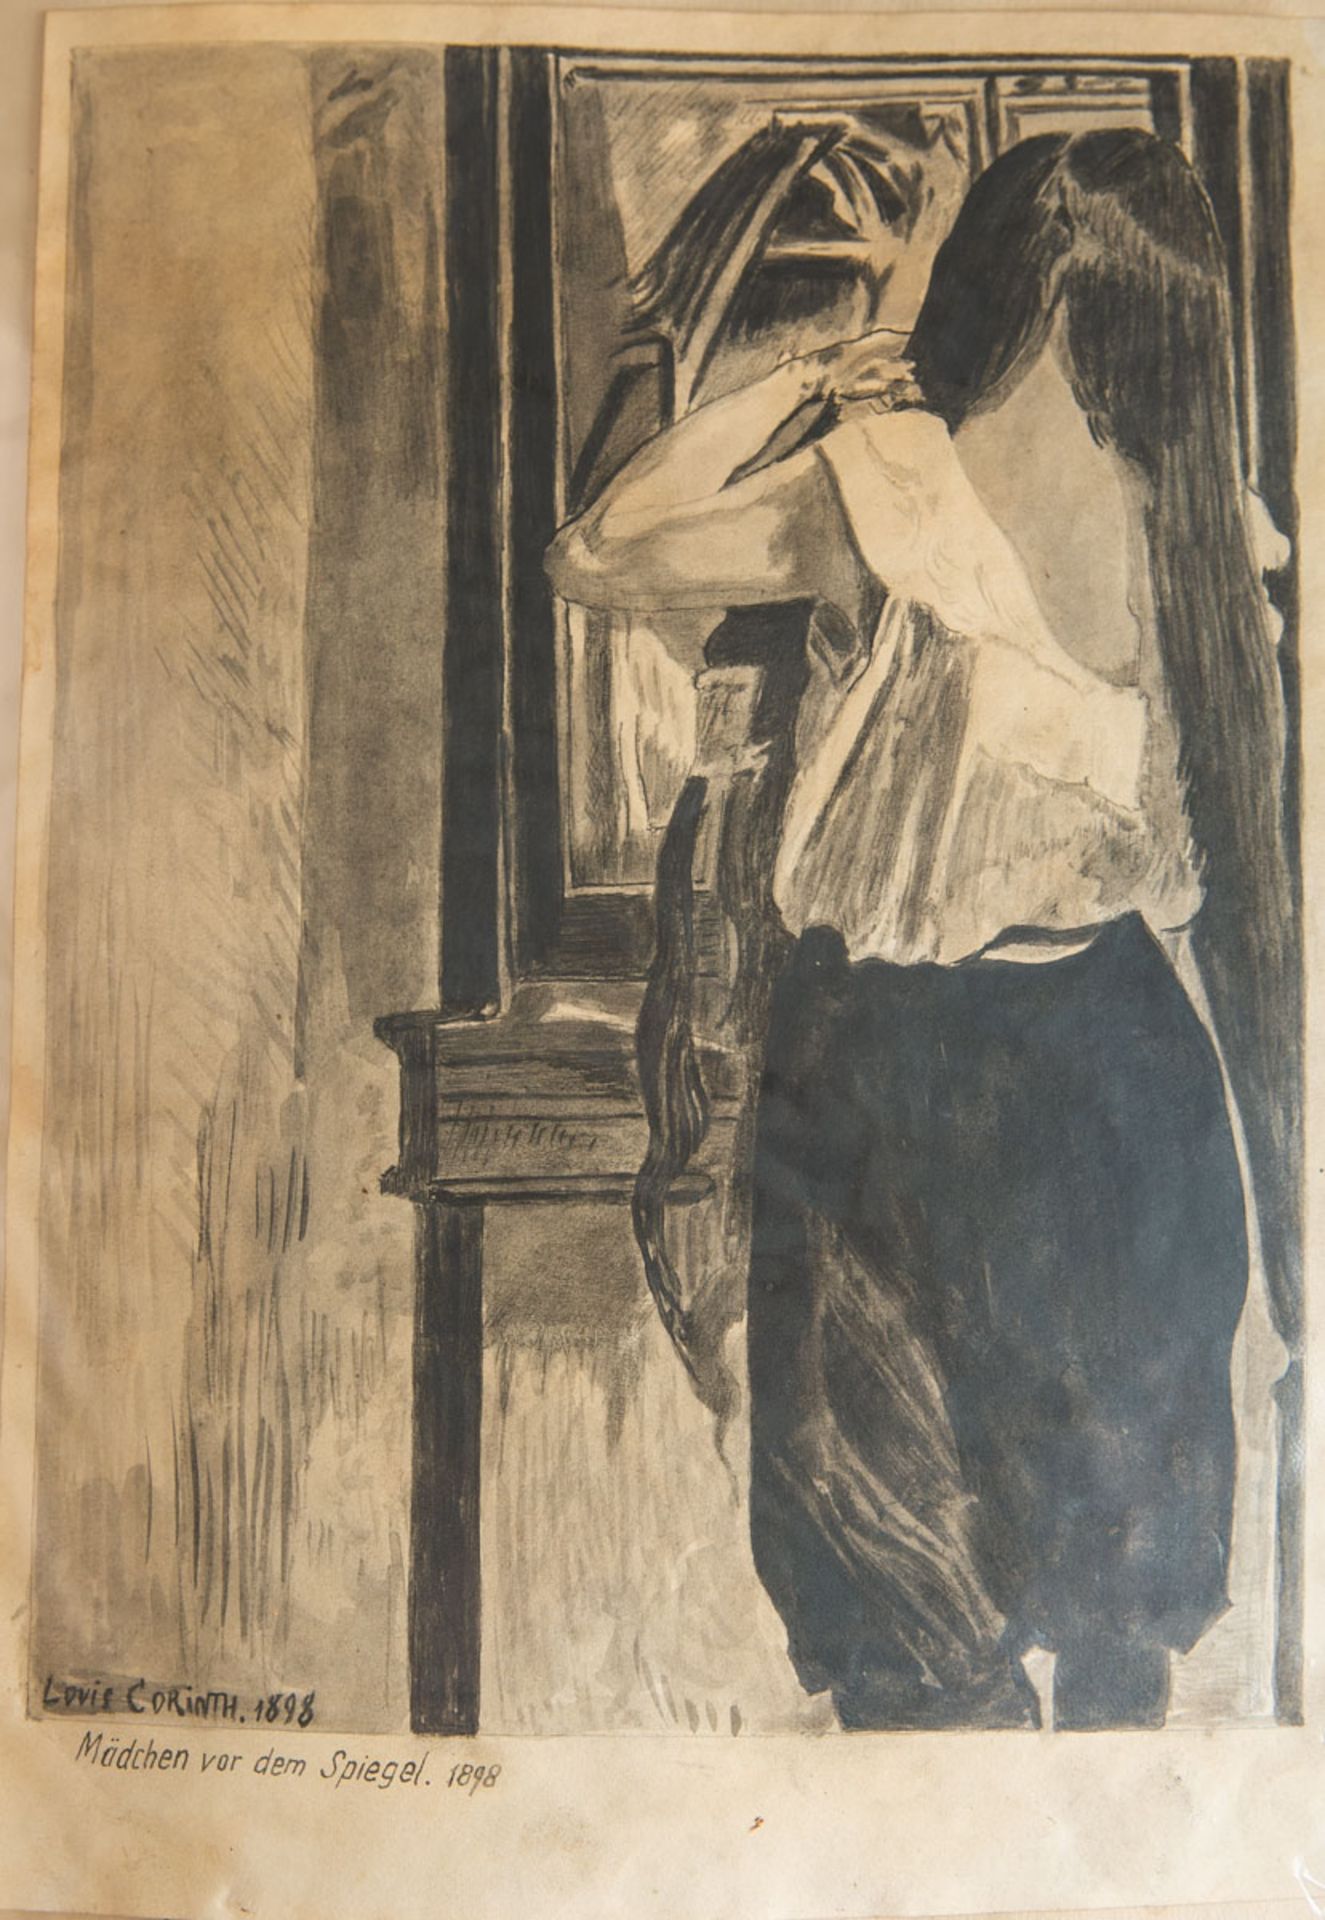 Corinth, Lovis (1858 - 1925), "Mädchen vor dem Spiegel" (1898)